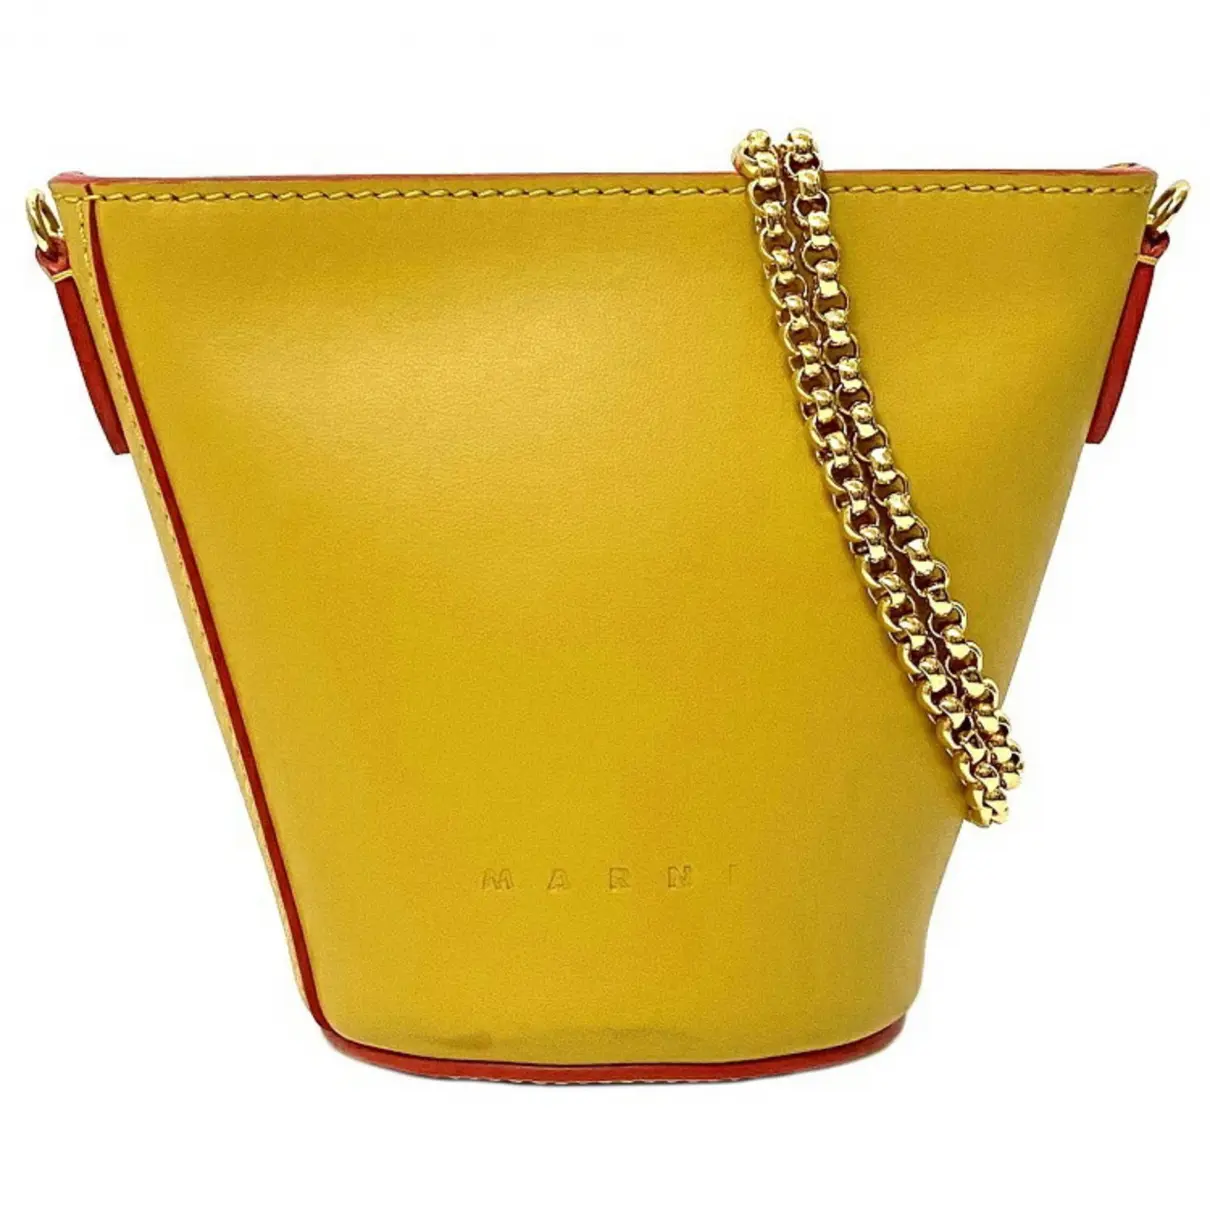 Bucket leather handbag Marni